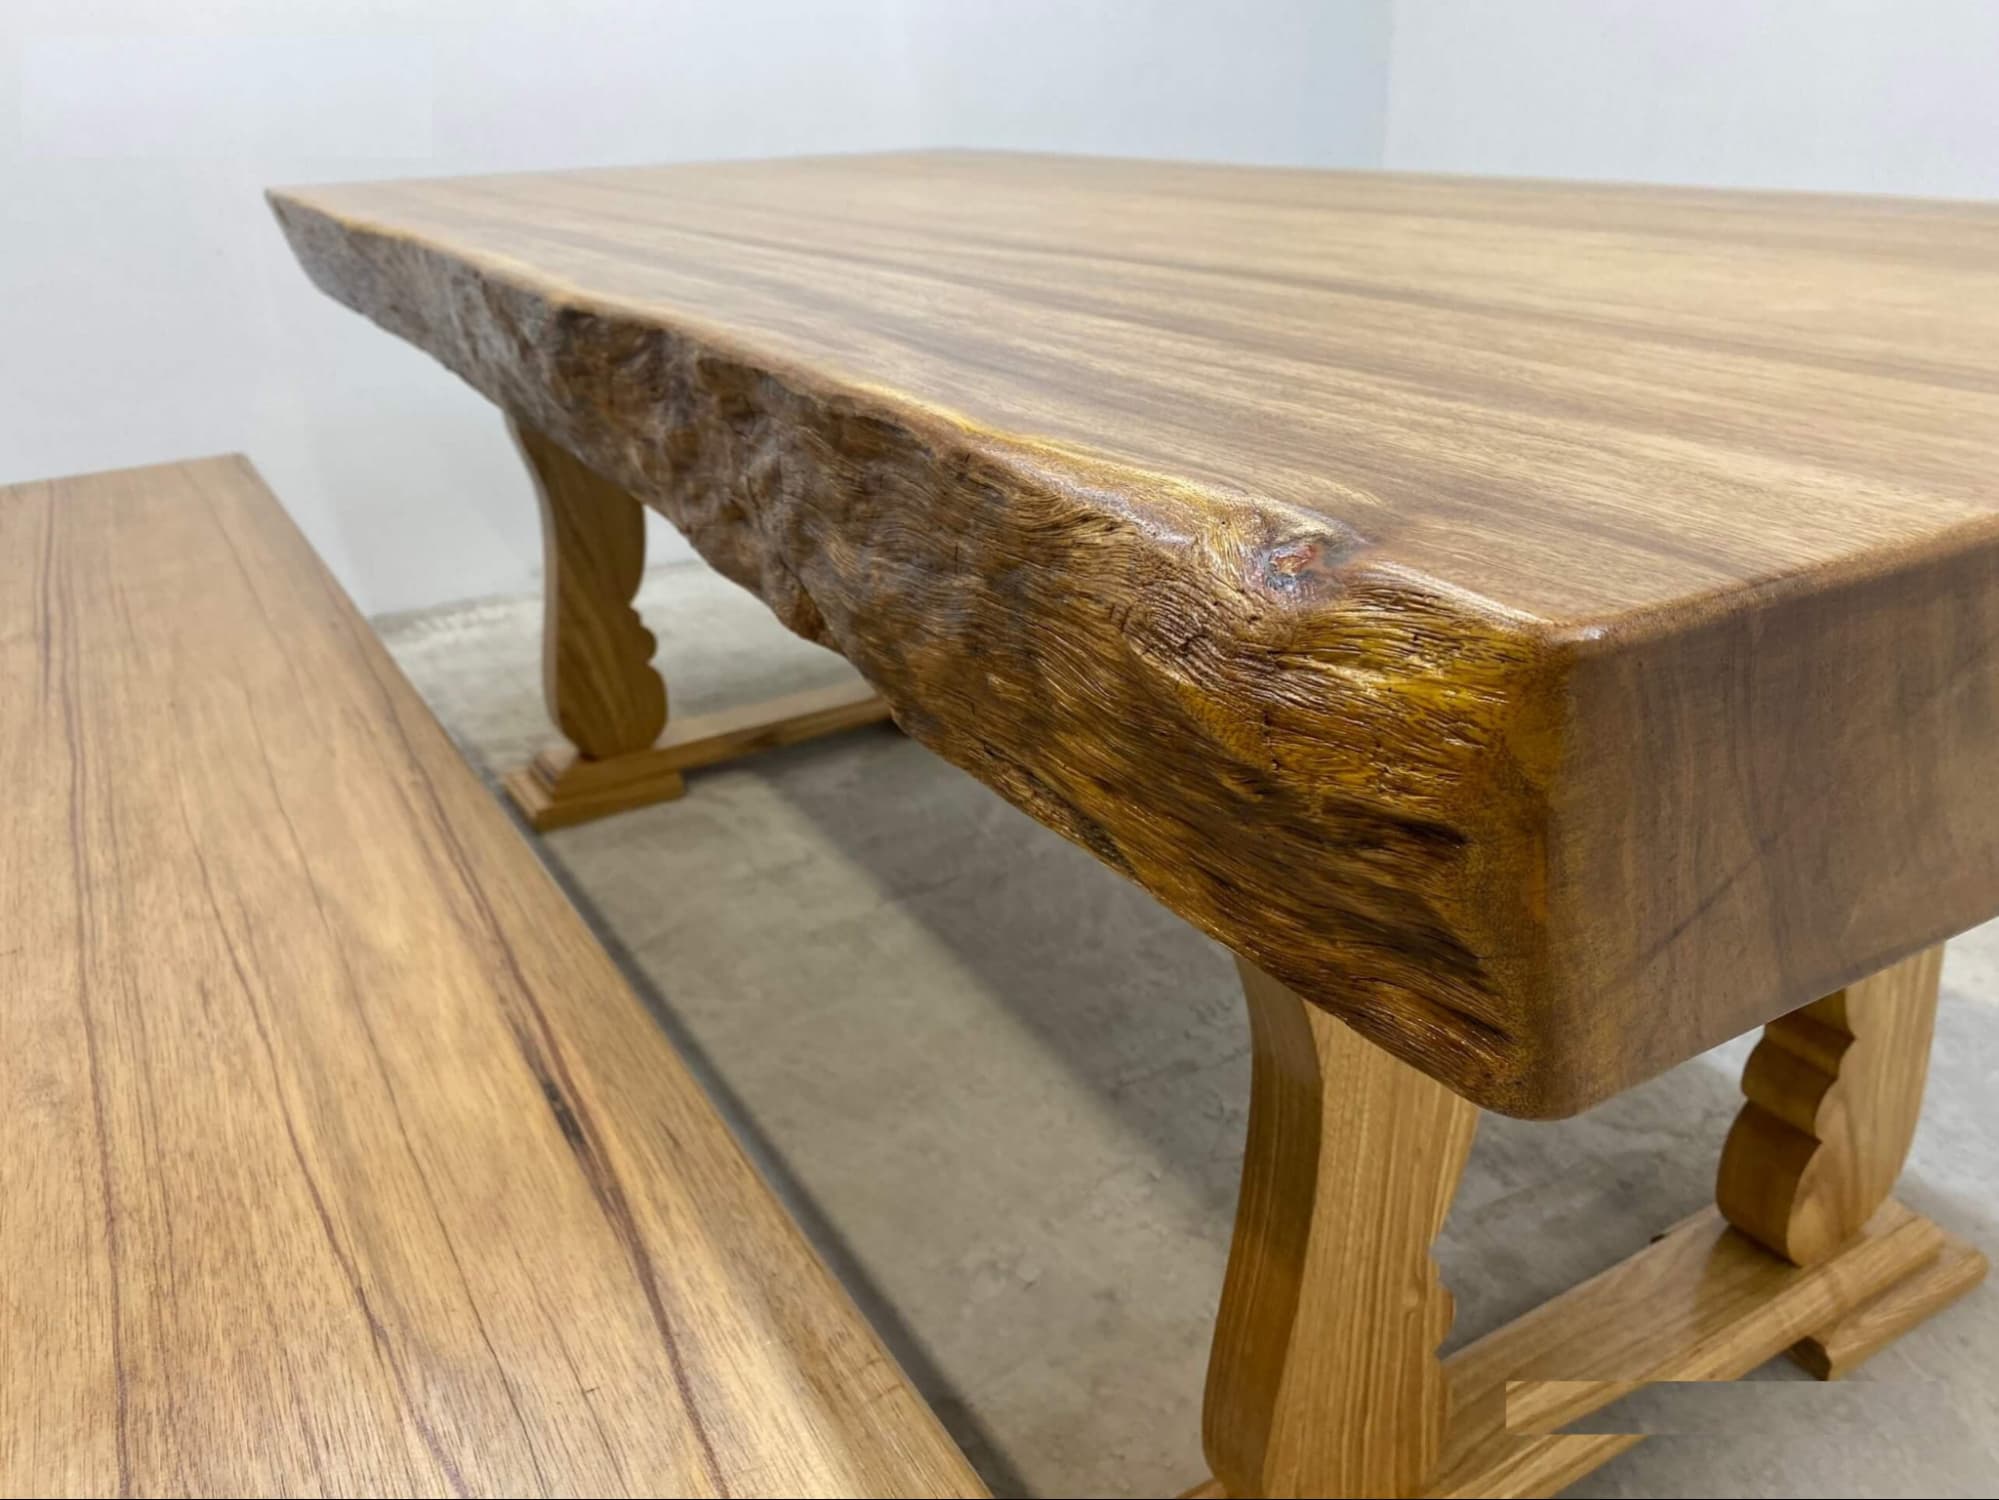 Mẫu bàn ăn bằng gỗ lim được yêu thích khi có độ bền lâu năm